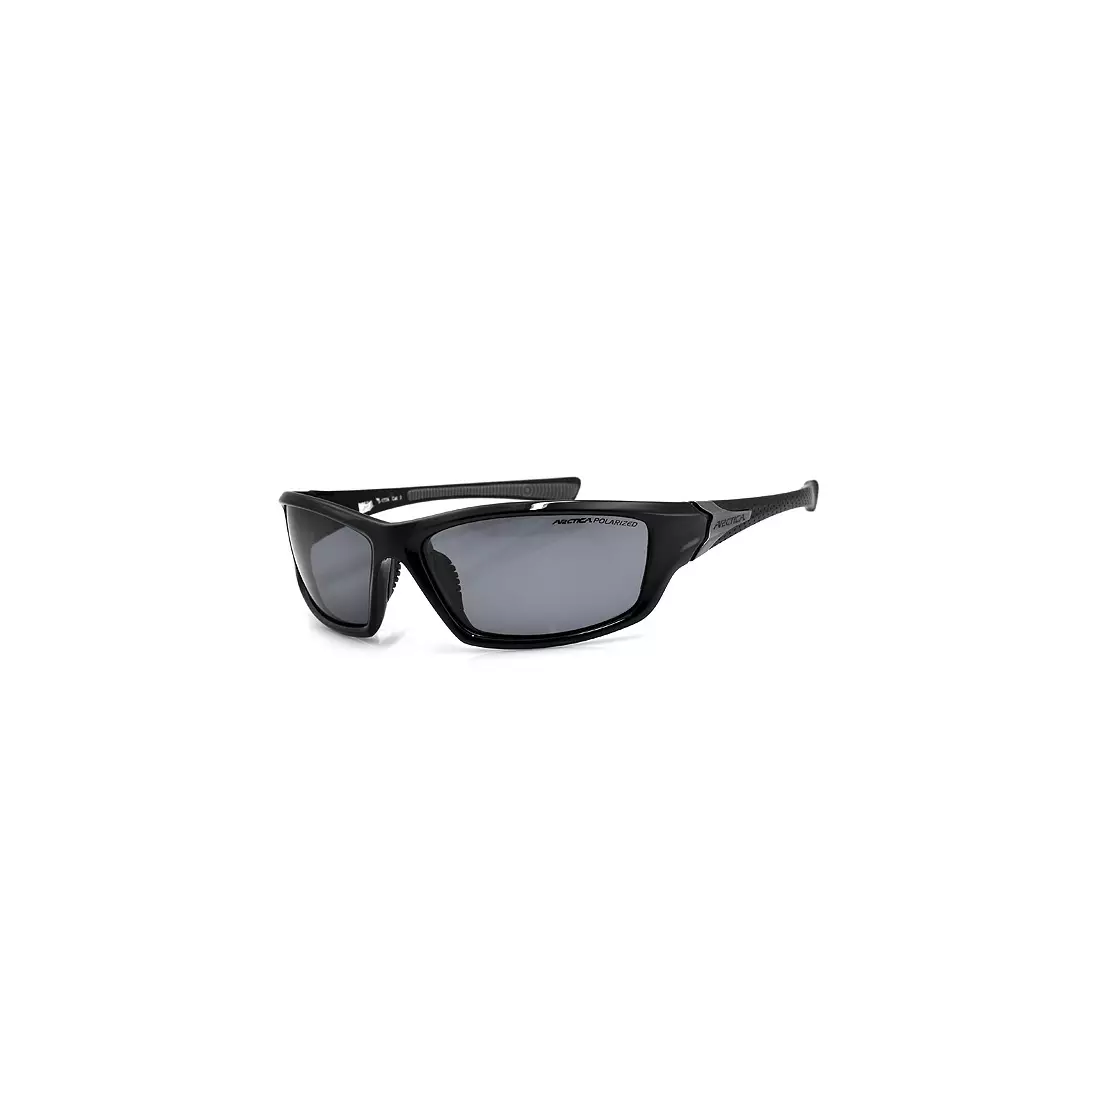 Sportovní brýle ARCTICA S-177 - barva: Černá a stříbrná